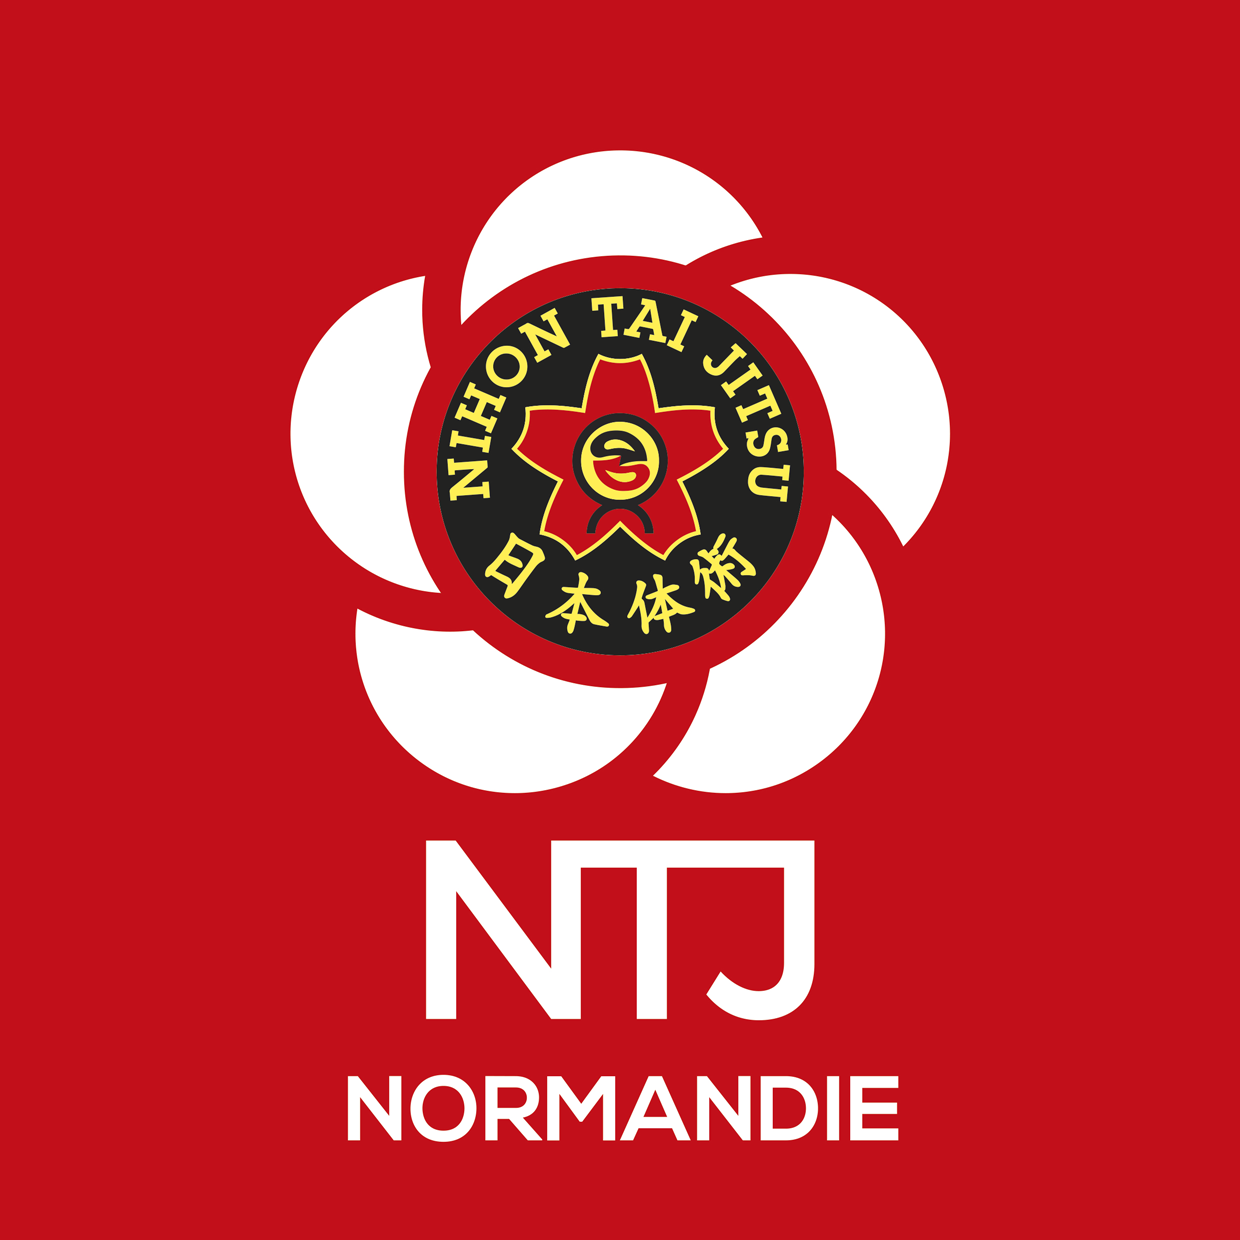 NTJ region NORMANDIE logo rvb